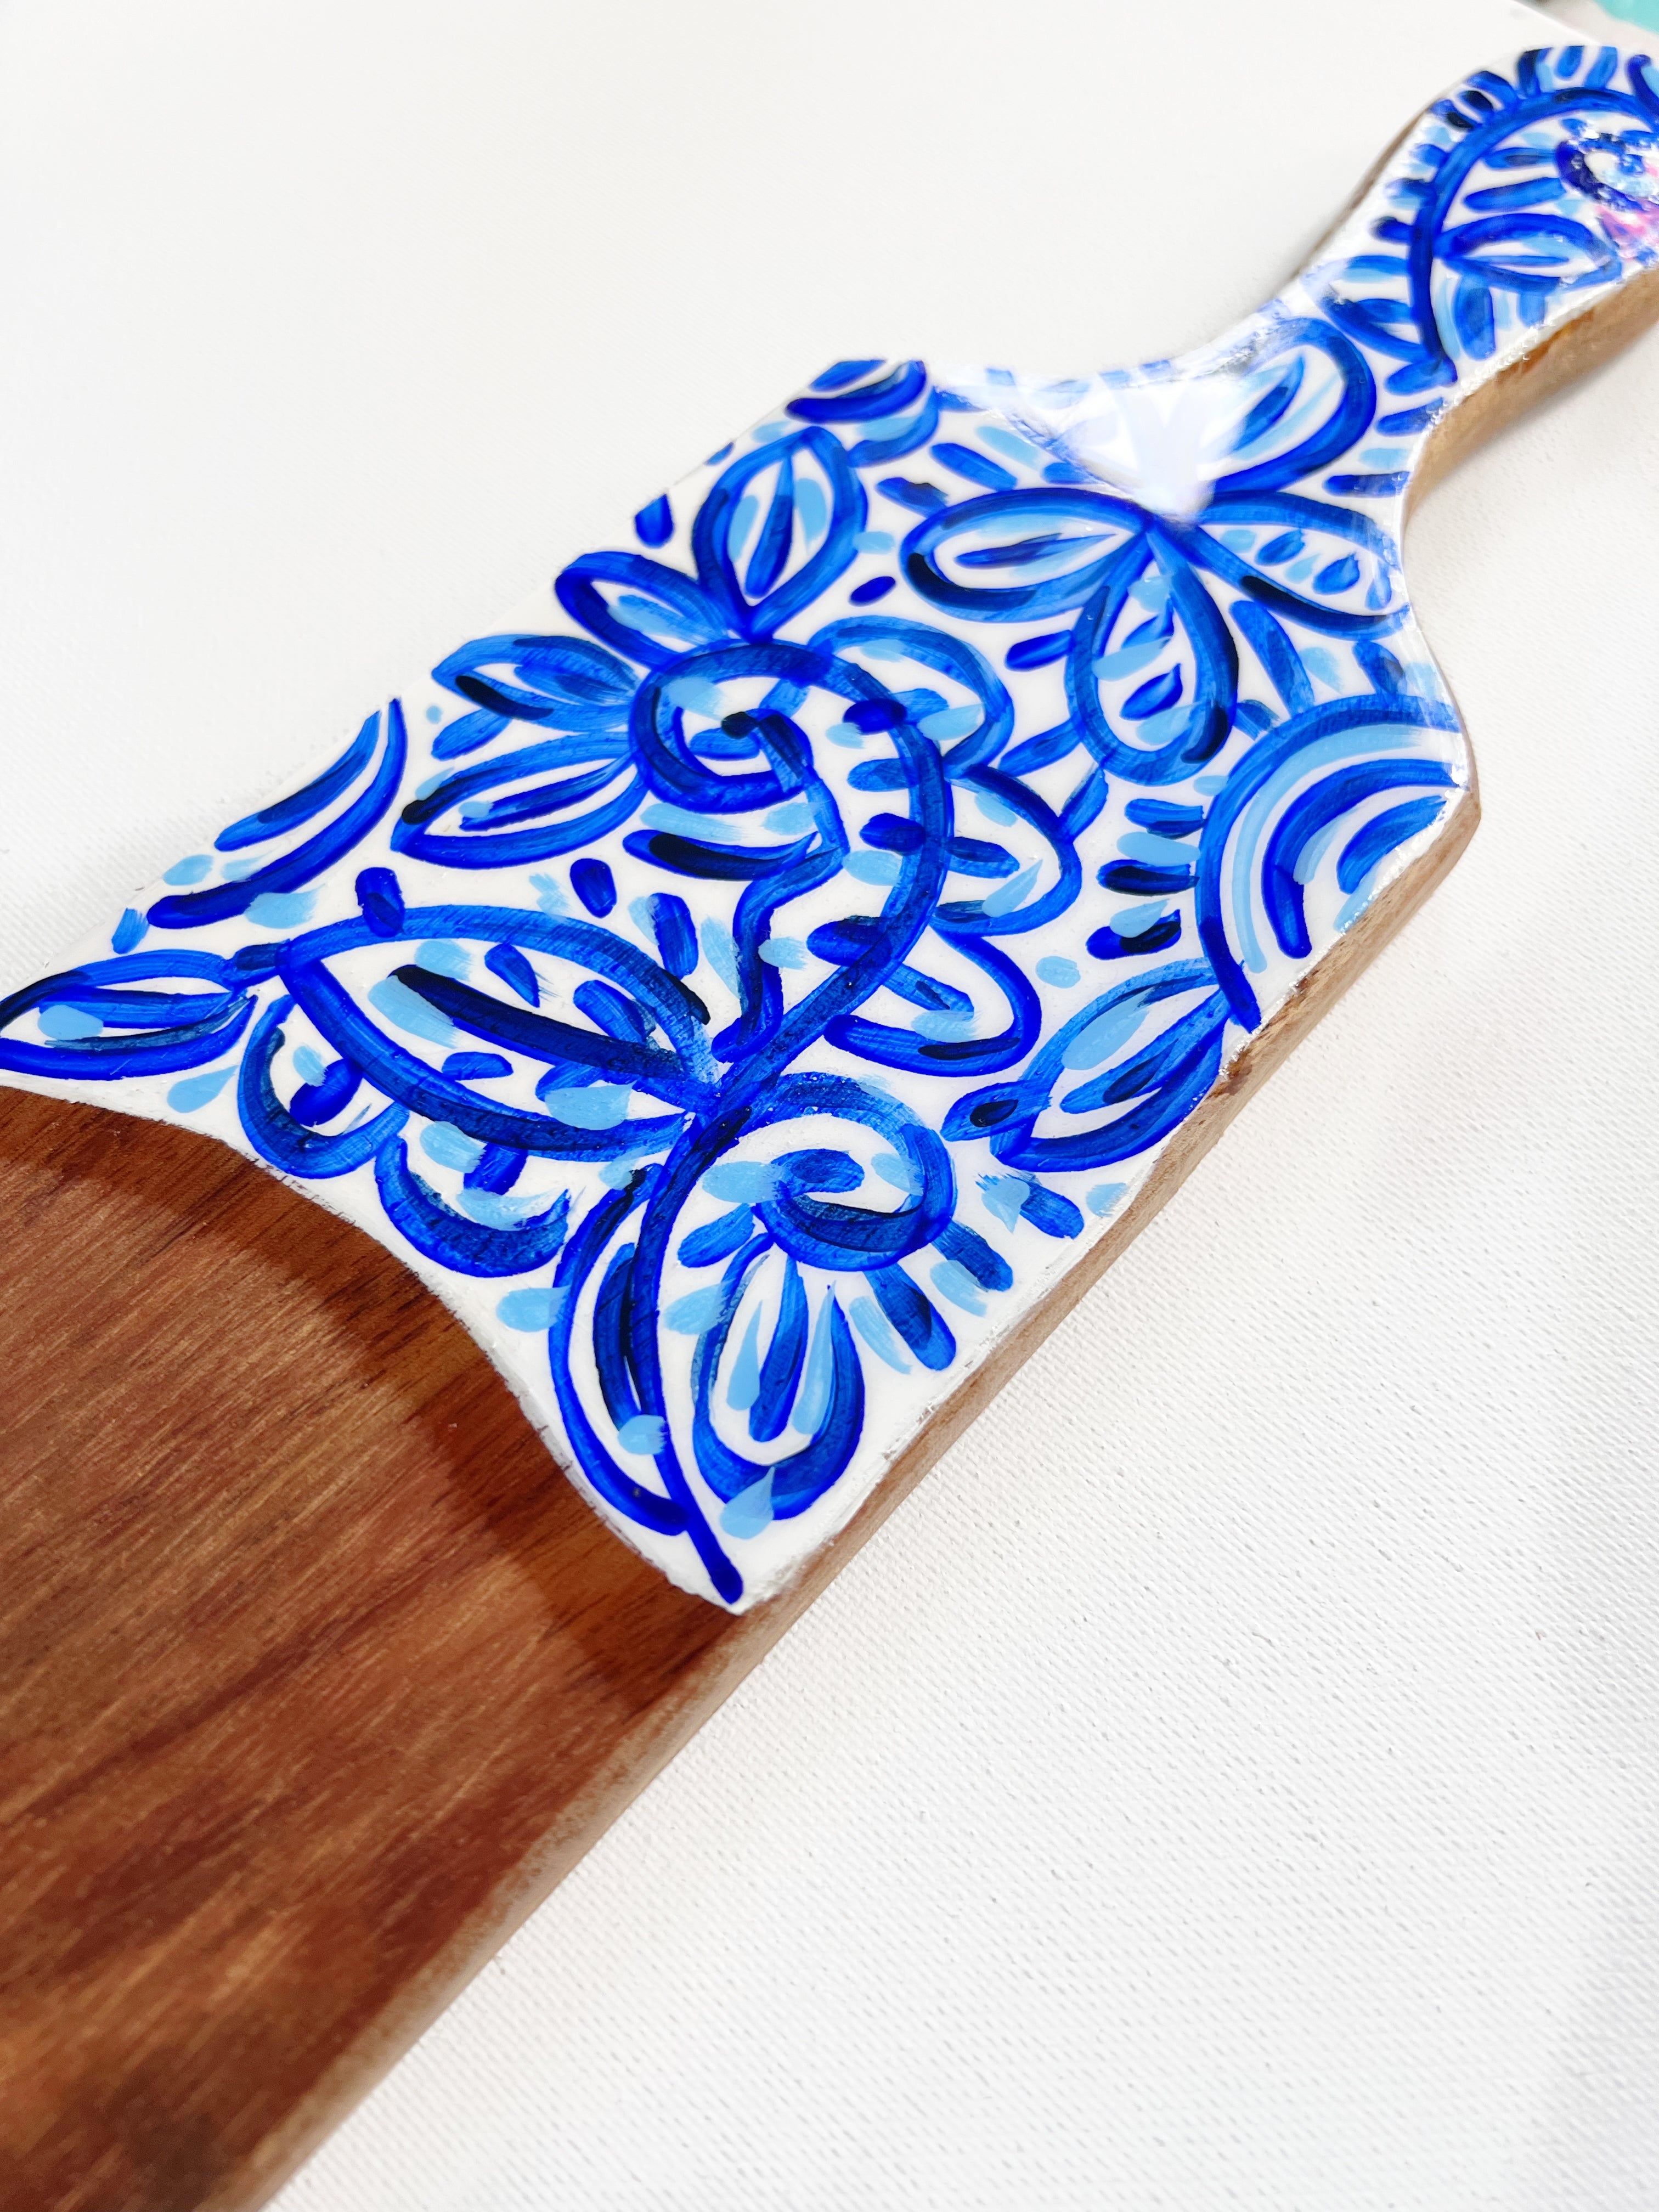 Baguette Cutting Board - Blue White